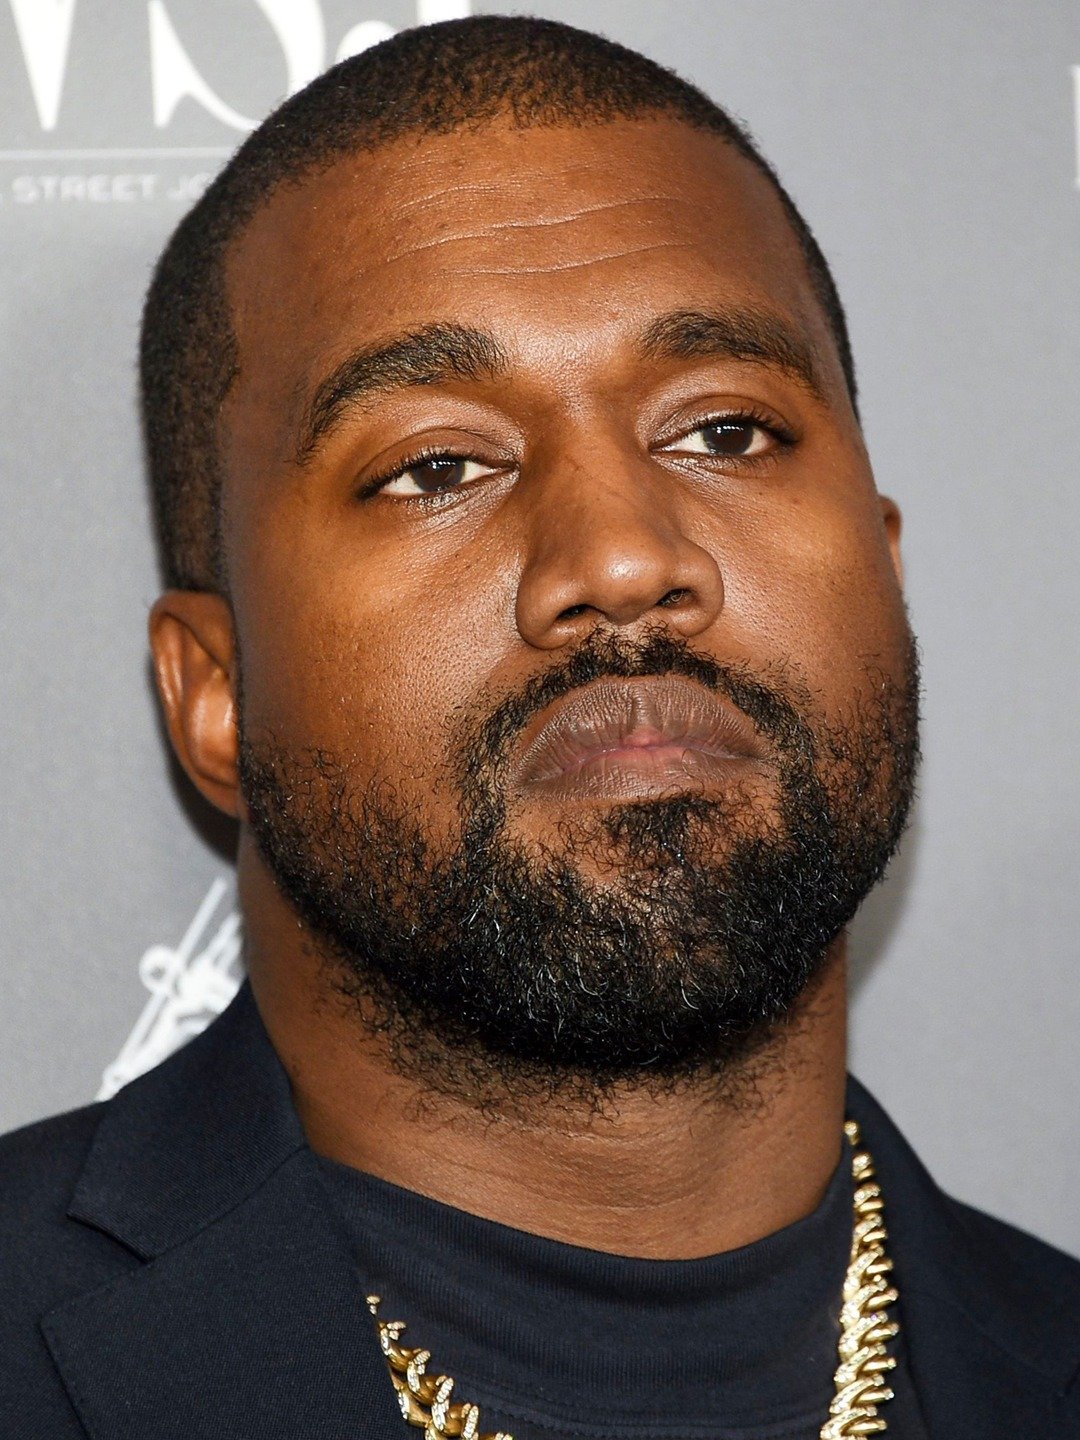 Kanye West - Rapper, Singer, Fashion Designer, Entrepreneur